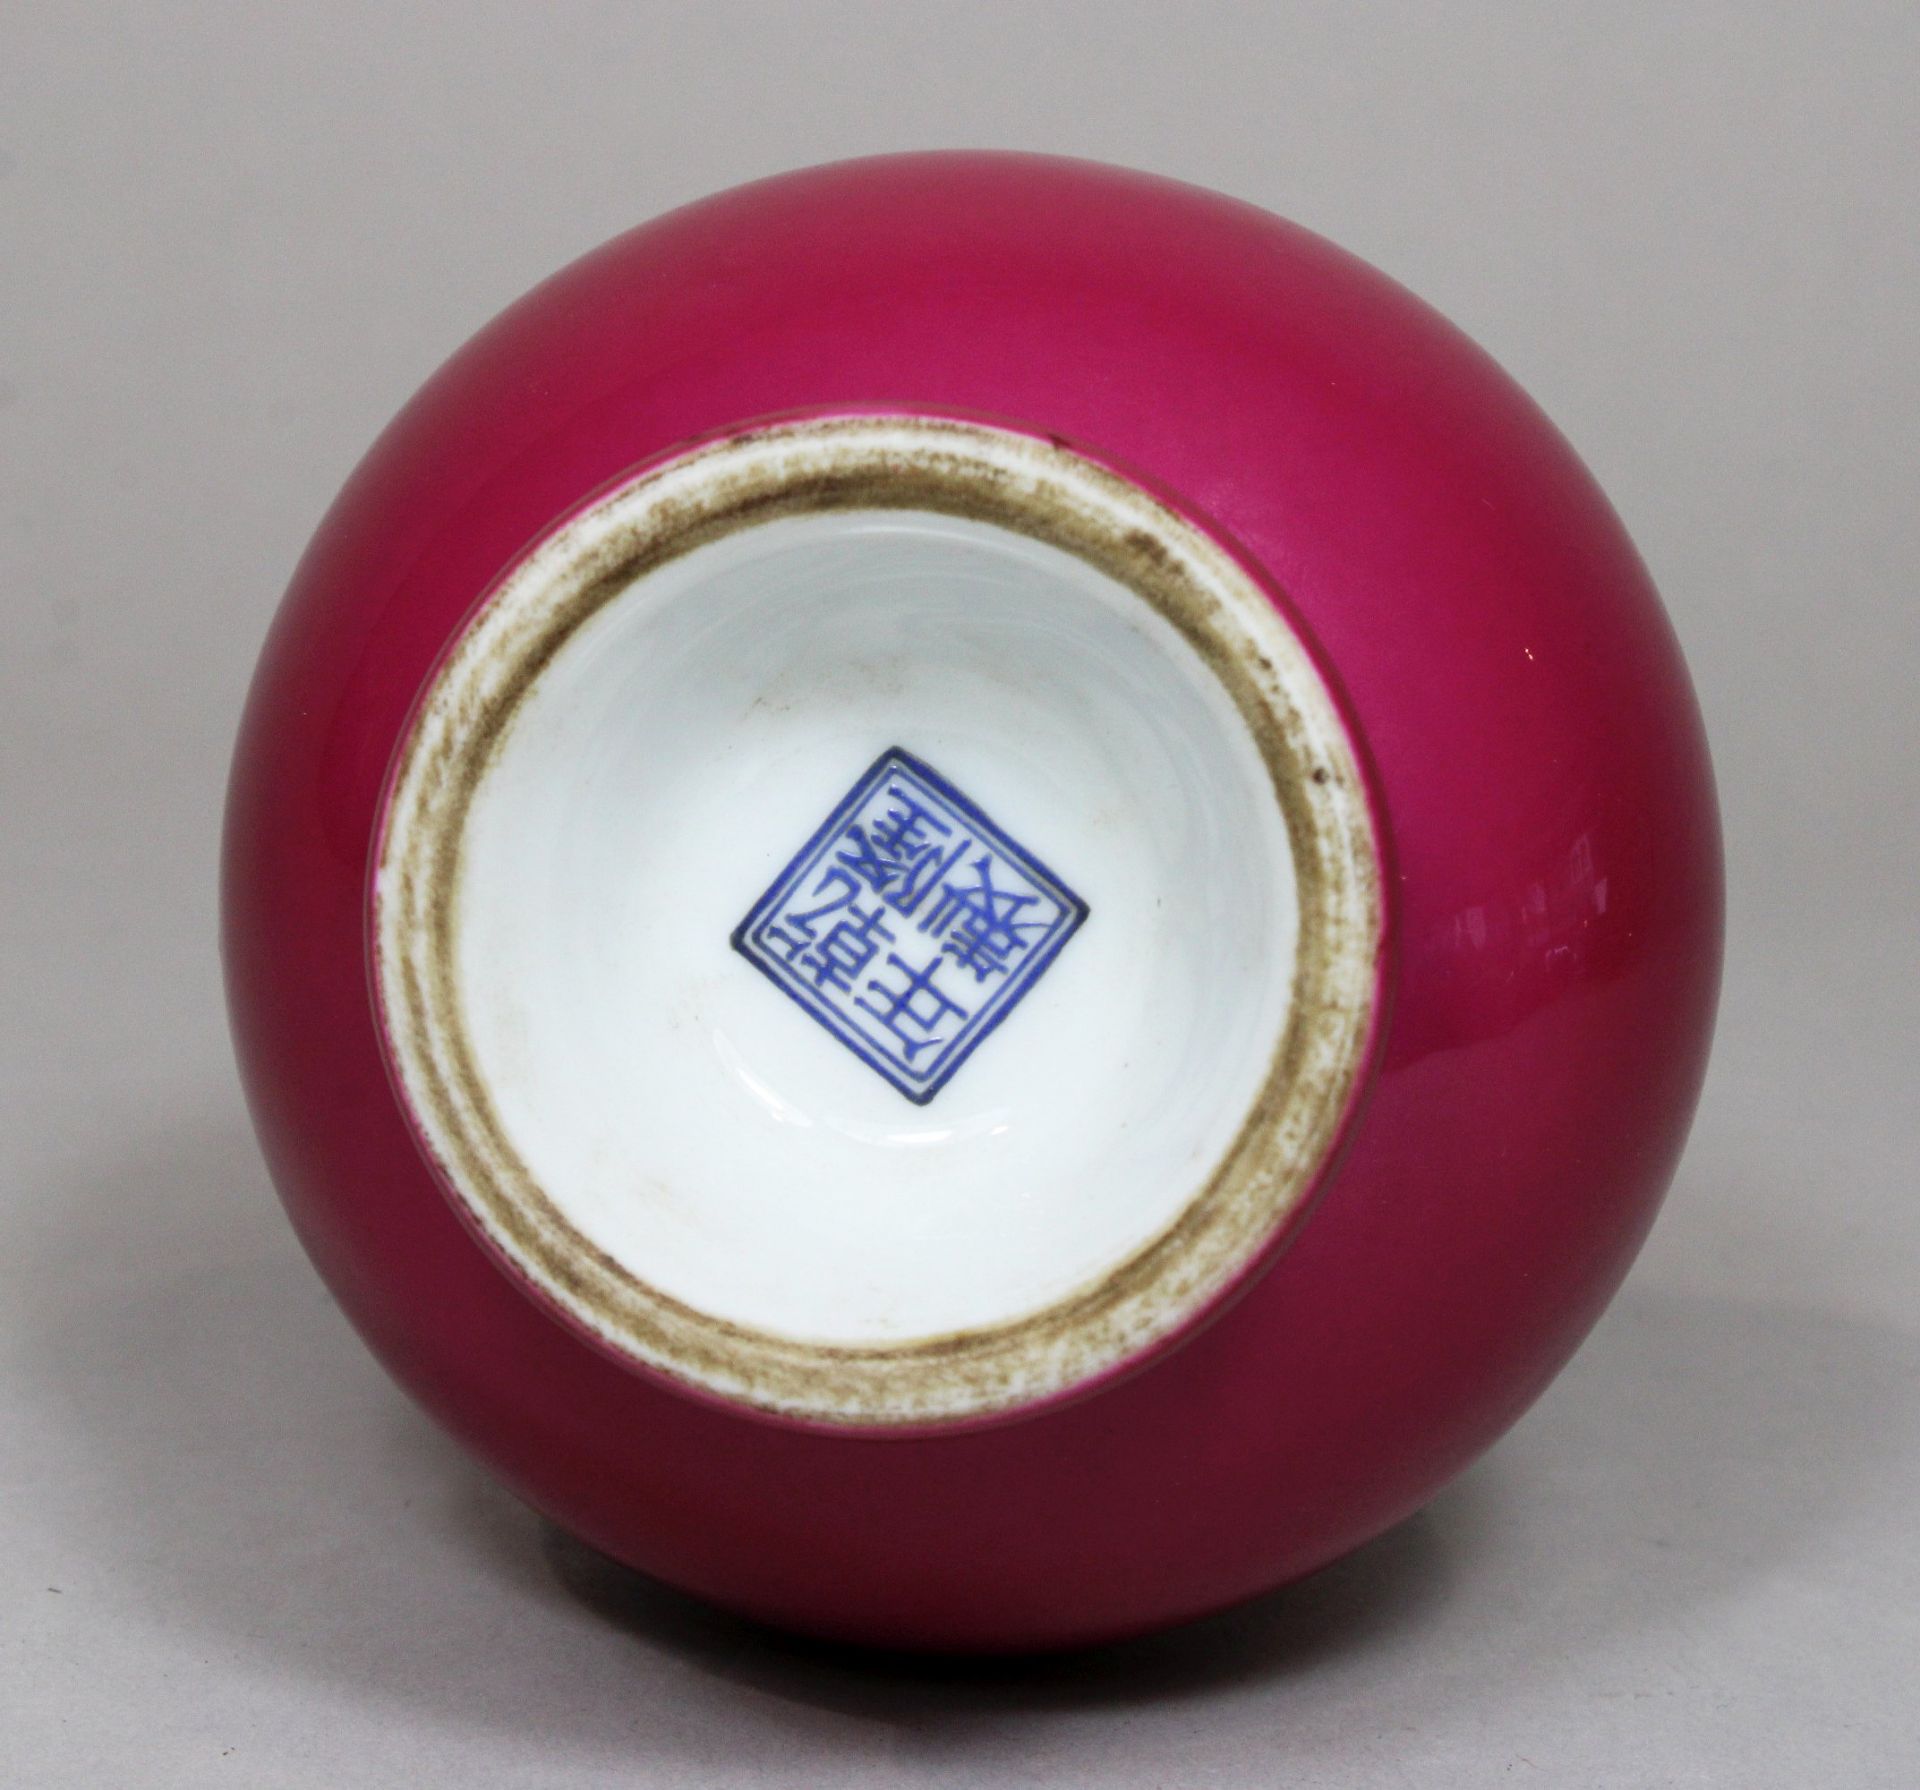 Tianqiuping Vase, China, Porzellan, wohl Qianlong Marke, rosa Glasur. H.: 16,2 cm. Guter, altersbed - Bild 2 aus 2